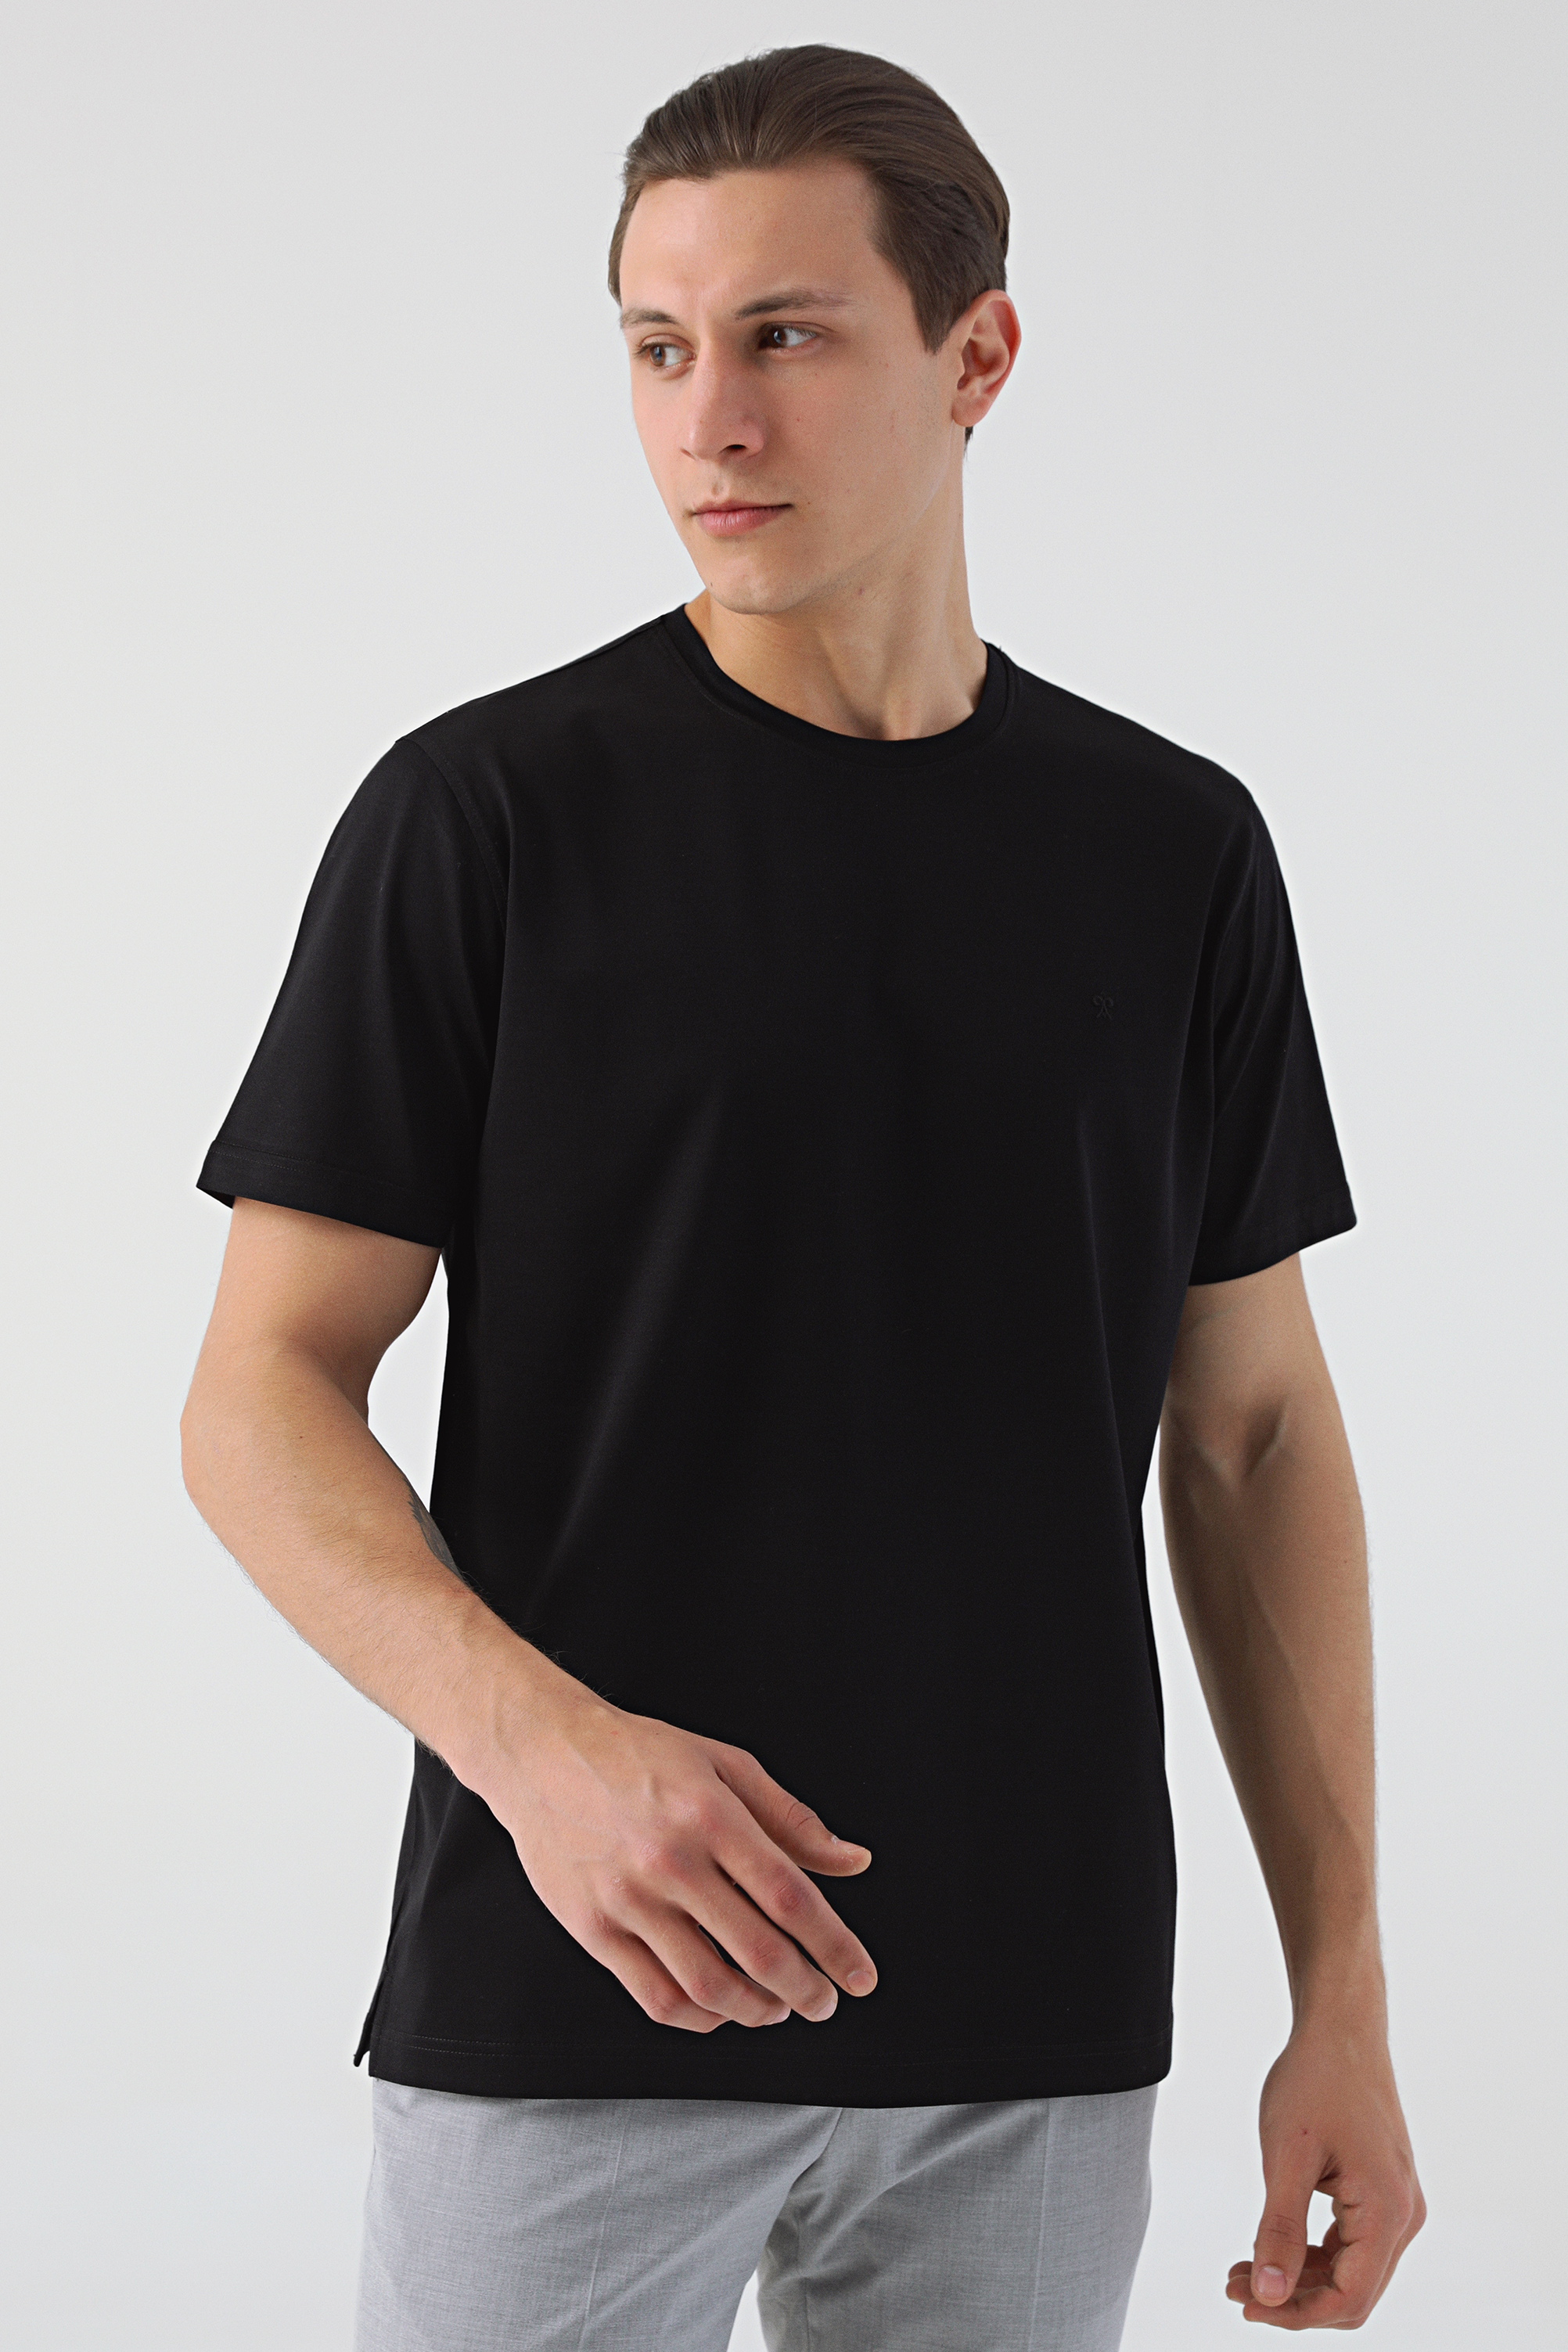 Damat Tween Damat Siyah T-shirt. 2